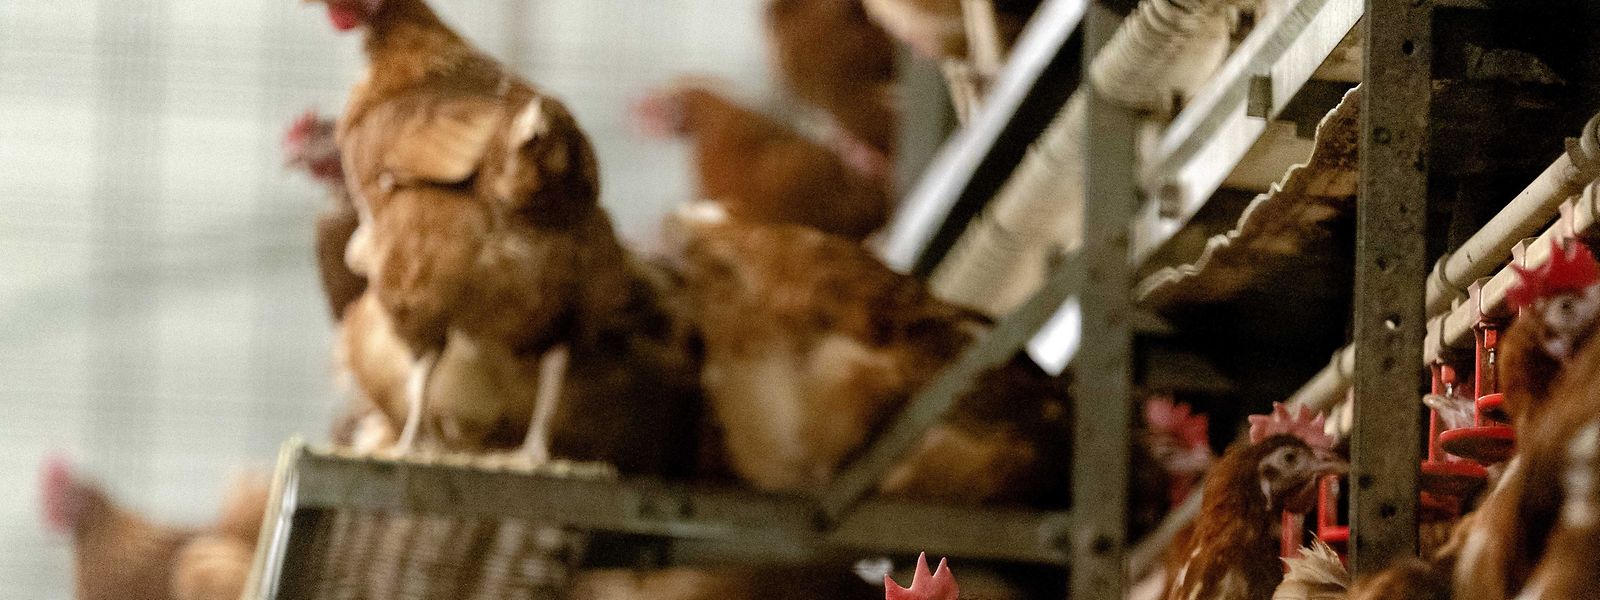 Países Baixos abateram mais de 37.000 frangos em outubro deste ano, e deverão abater mais nas próximas semanas.